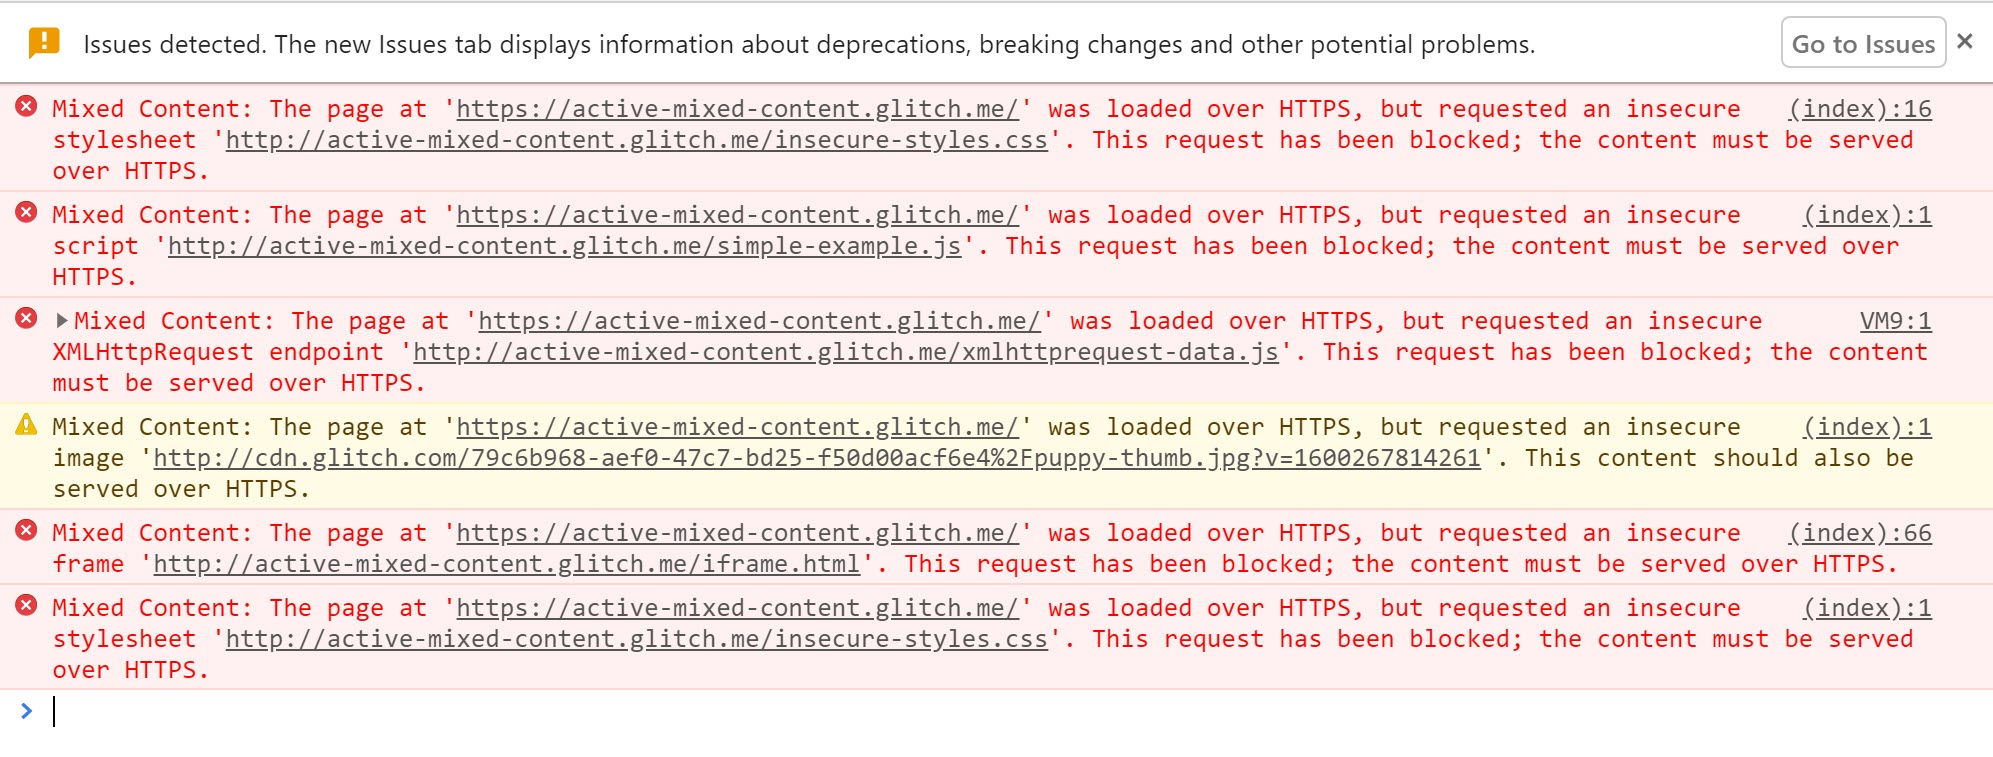 활성 혼합 콘텐츠가 차단되었을 때 표시되는 경고를 표시하는 Chrome DevTools